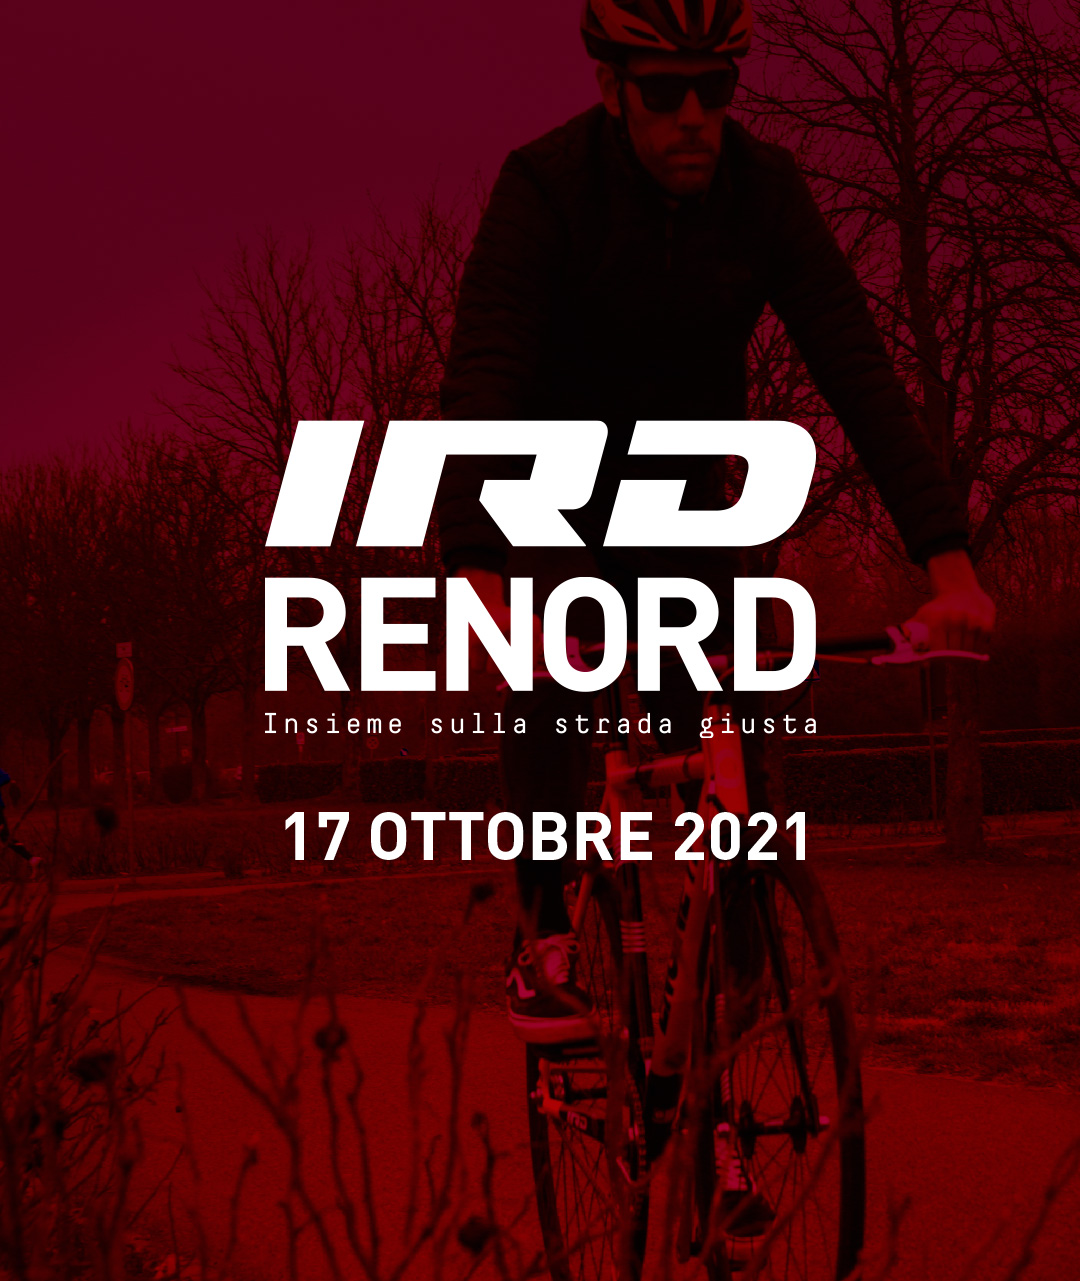 COMUNICATO STAMPA - Domenica 17 ottobre Renord e IRD Squadra Corse  insieme per l’evento “IRD does Renord”